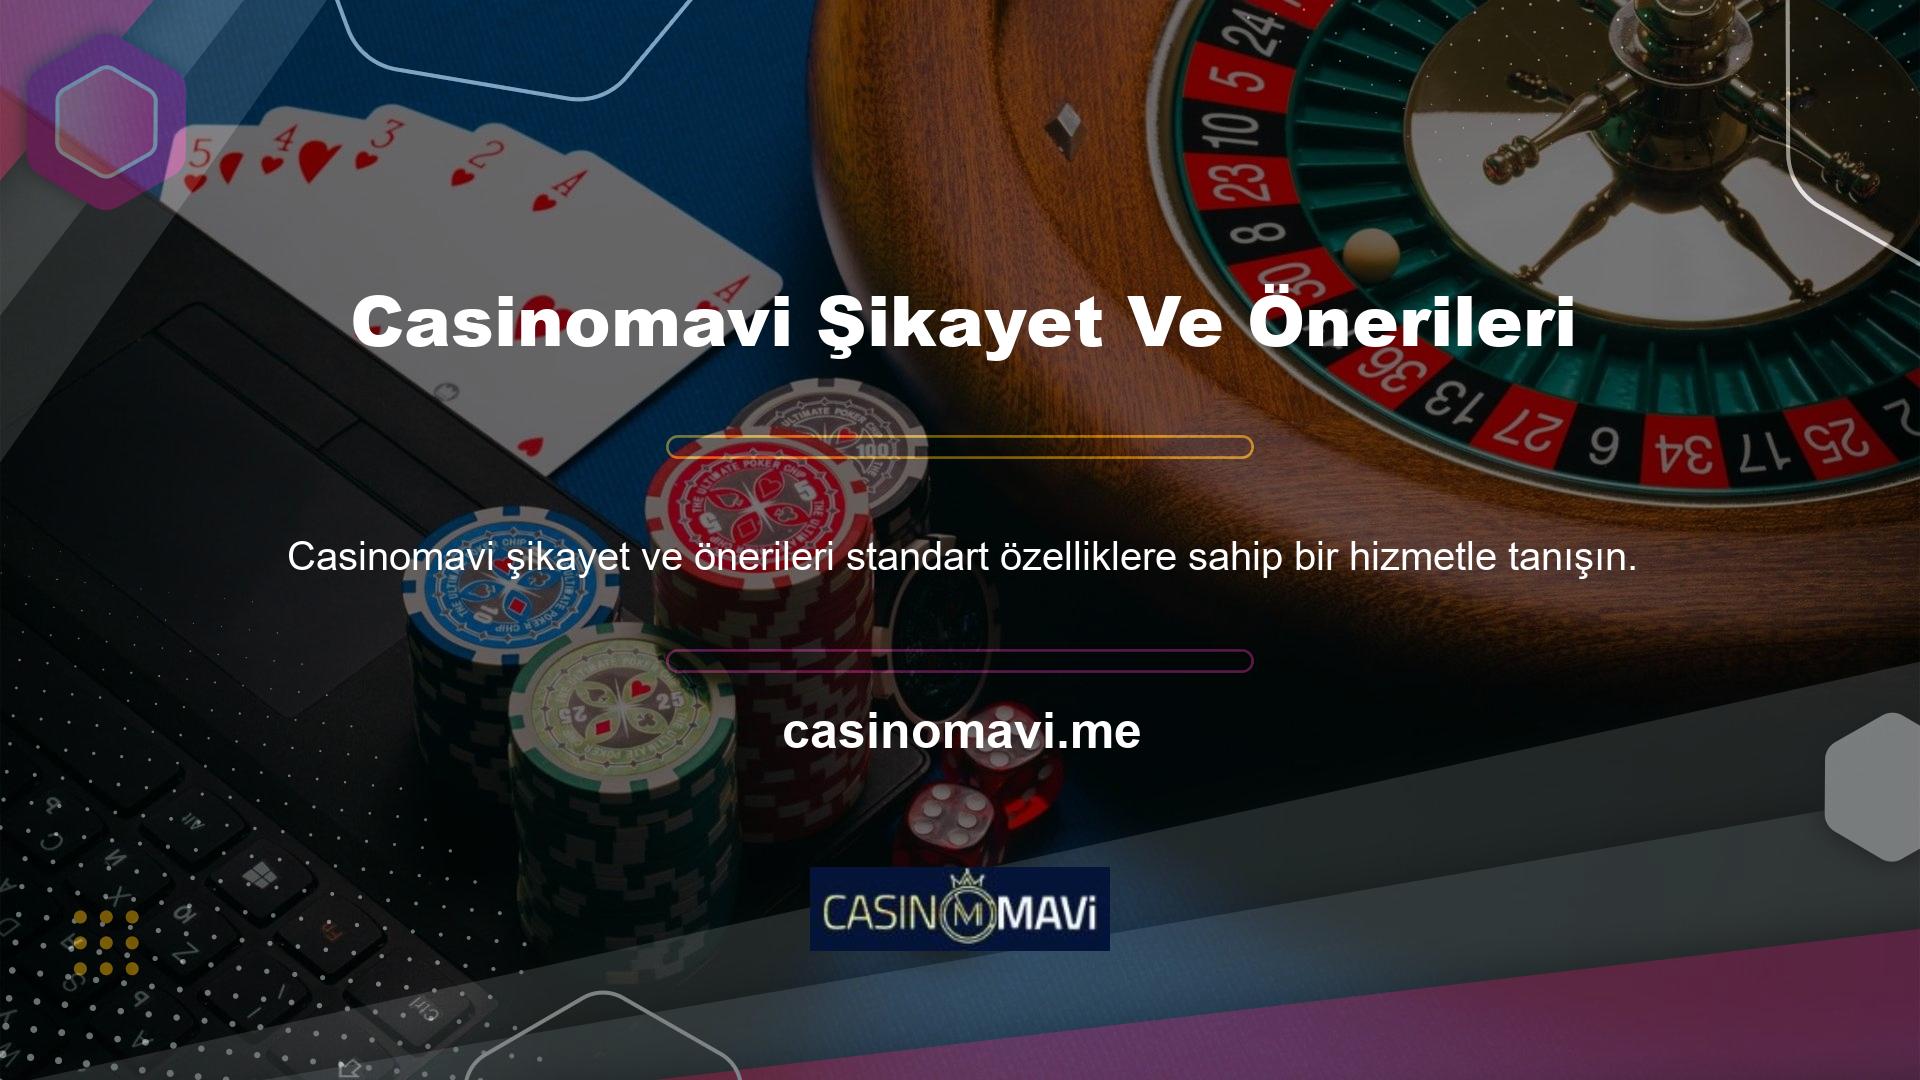 Casinomavi Sitesi yetkili servis ürünü olup sadece 18 yaş üzeri yetişkinlere yöneliktir